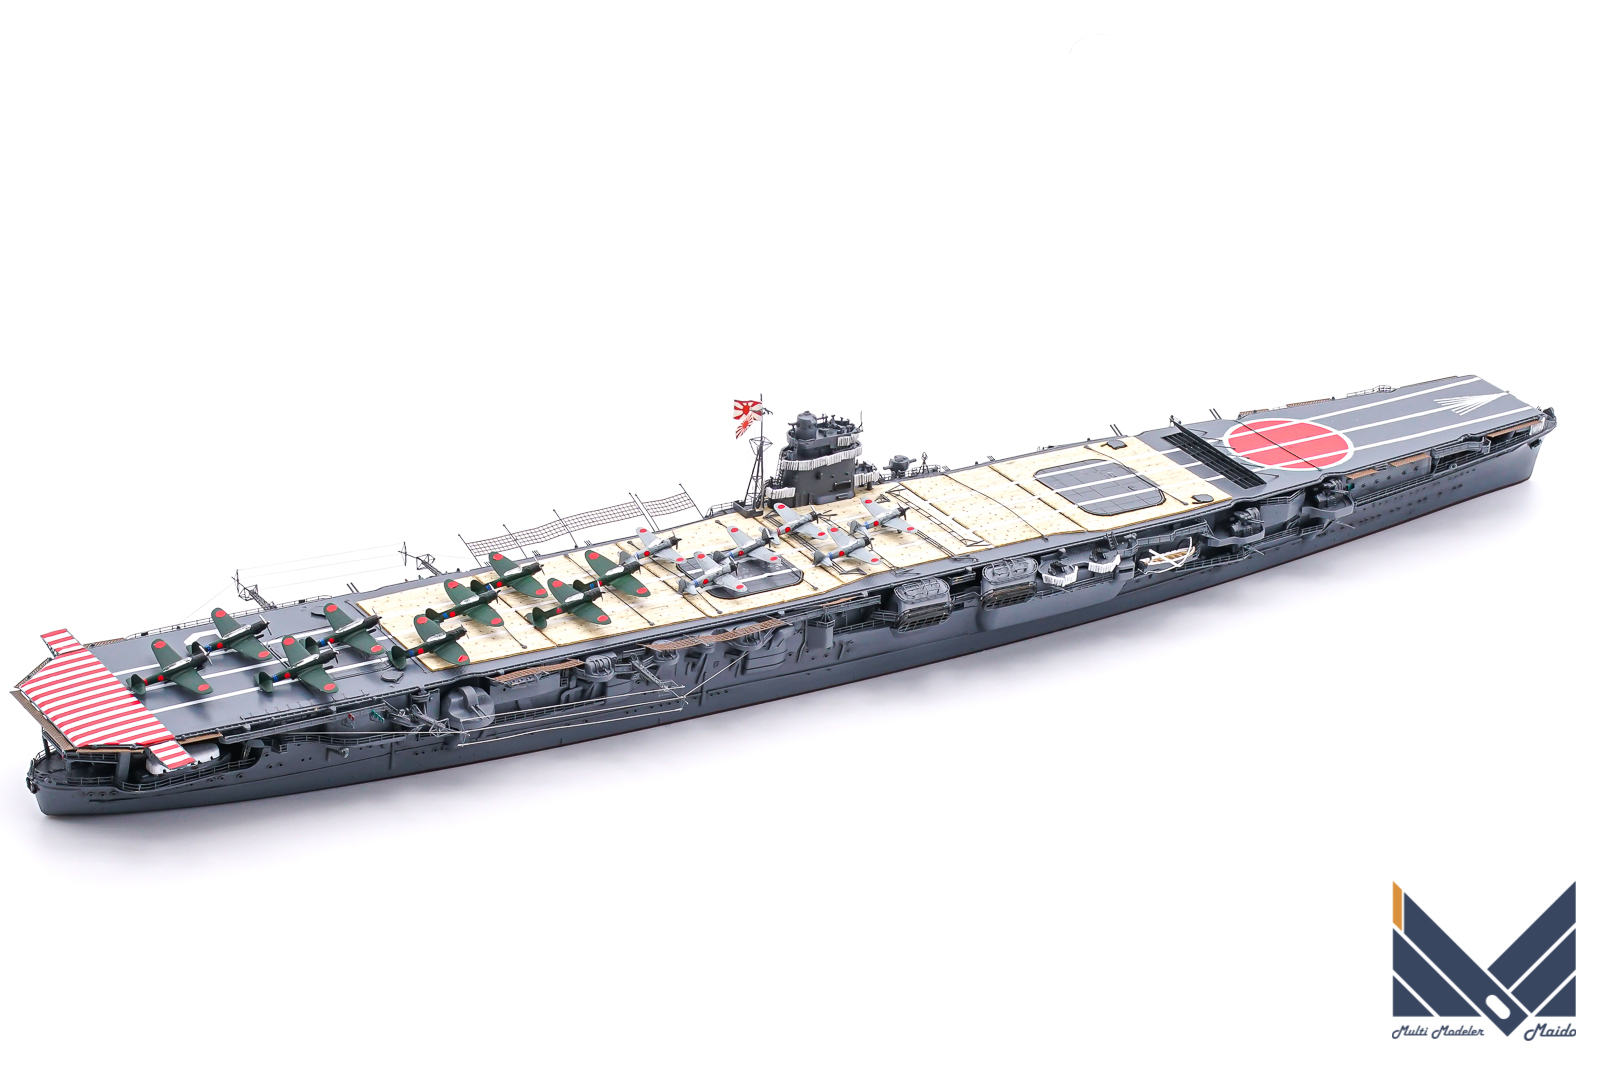 艦船模型スペシャル69号掲載 1/700日本空母「飛龍」ミッドウェー海戦